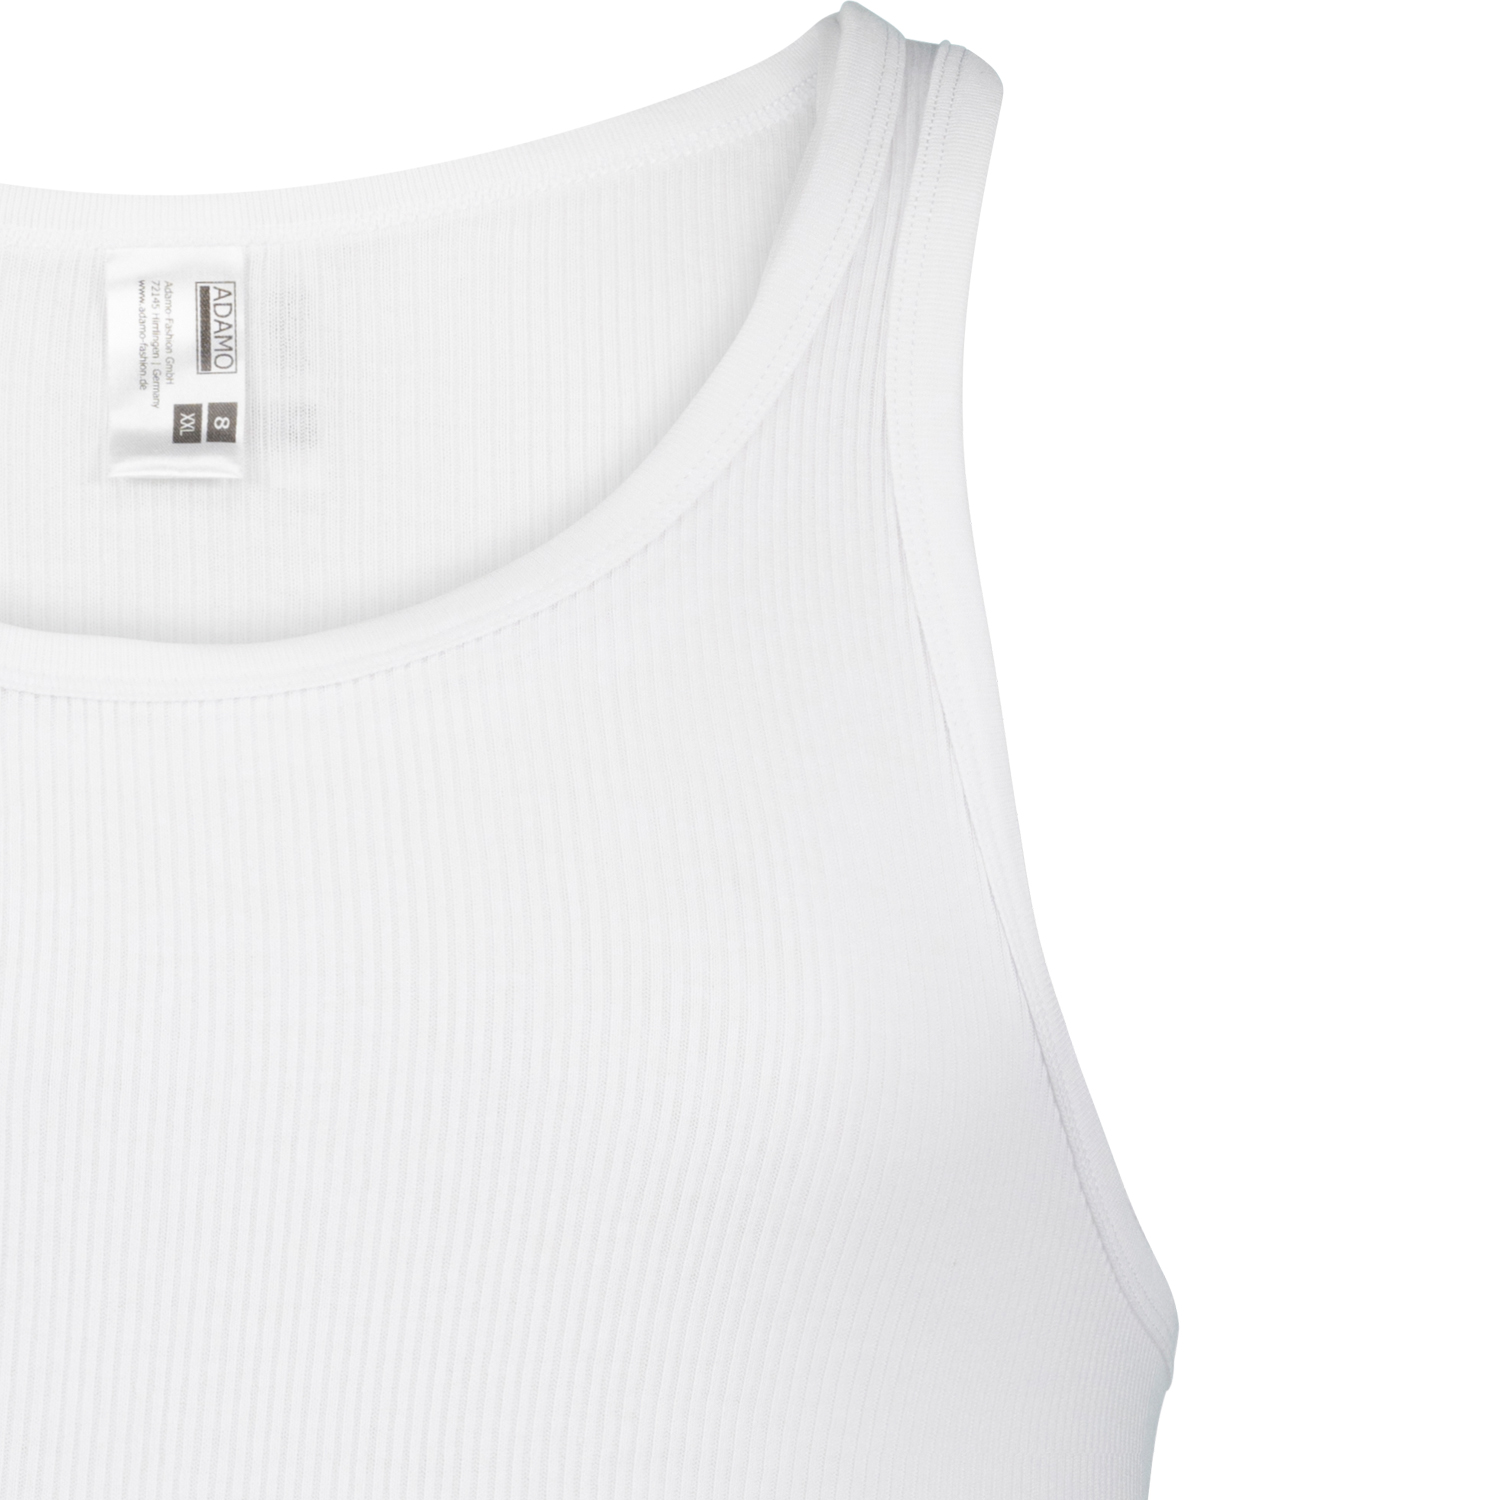 Weißes PRESTIGE Unterhemd von ADAMO in Doppelripp bis Übergröße 20